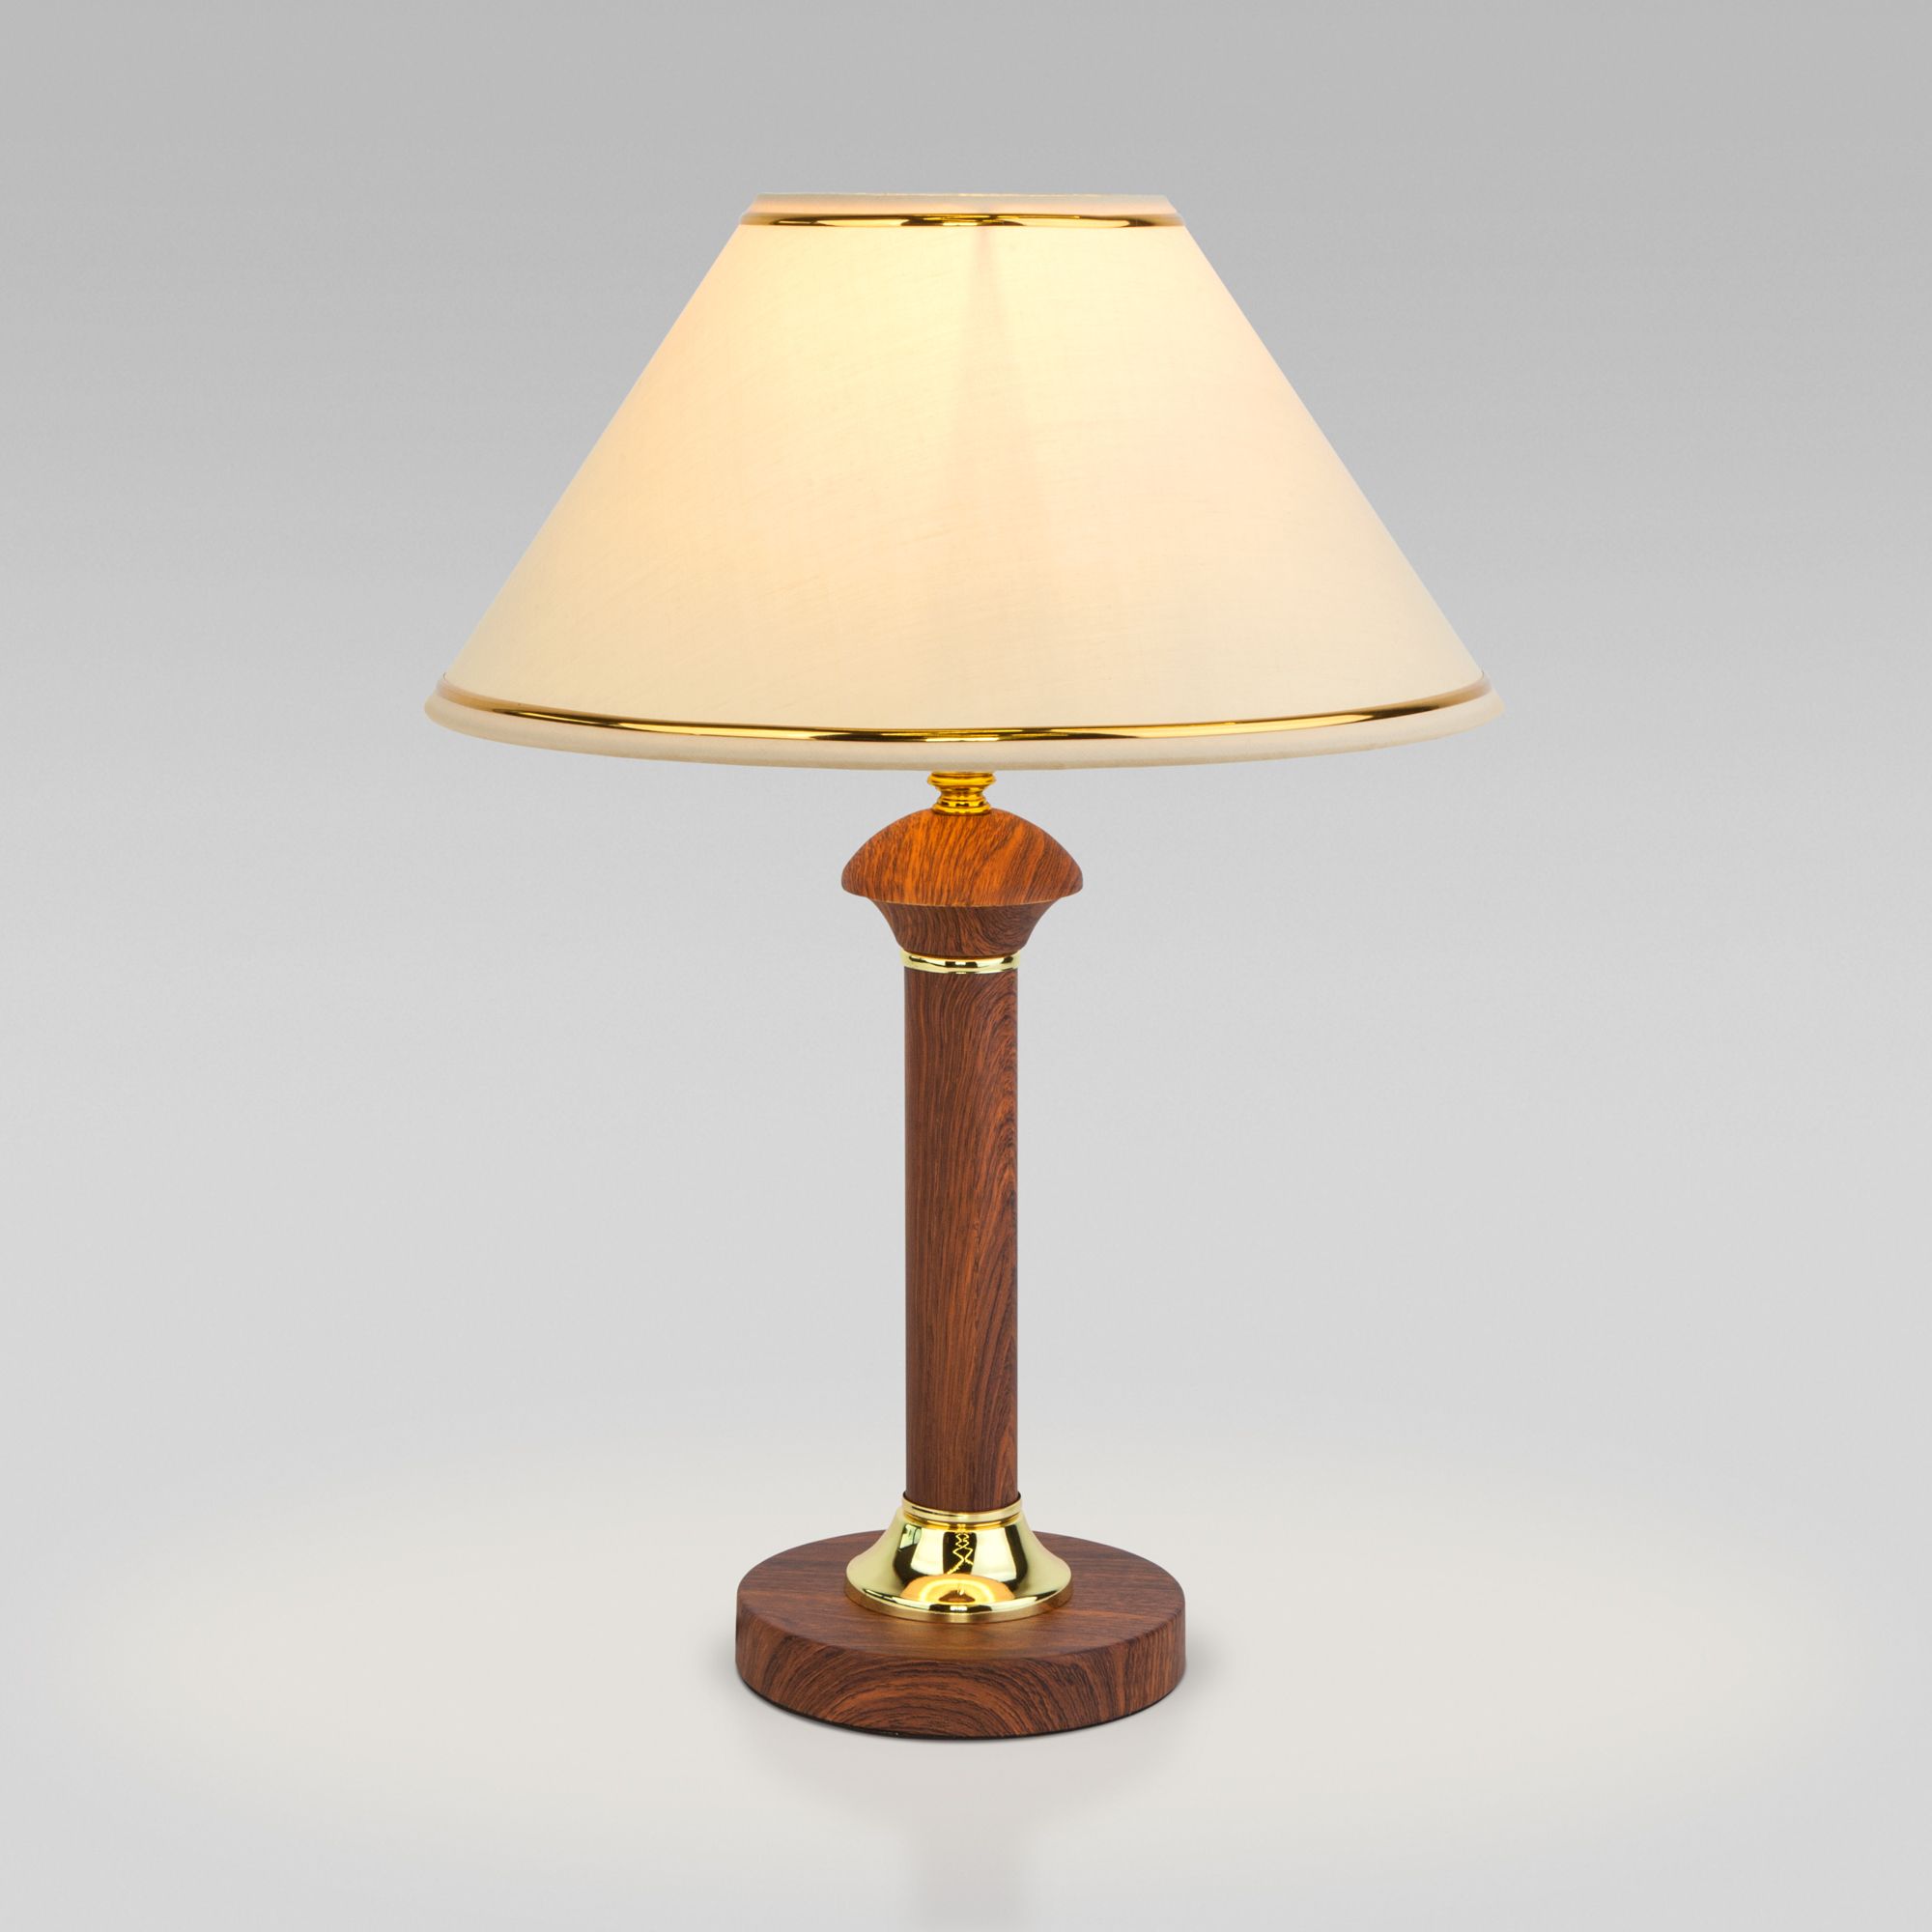 Классическая настольная лампа Eurosvet Lorenzo a052038 60019/1 орех фото